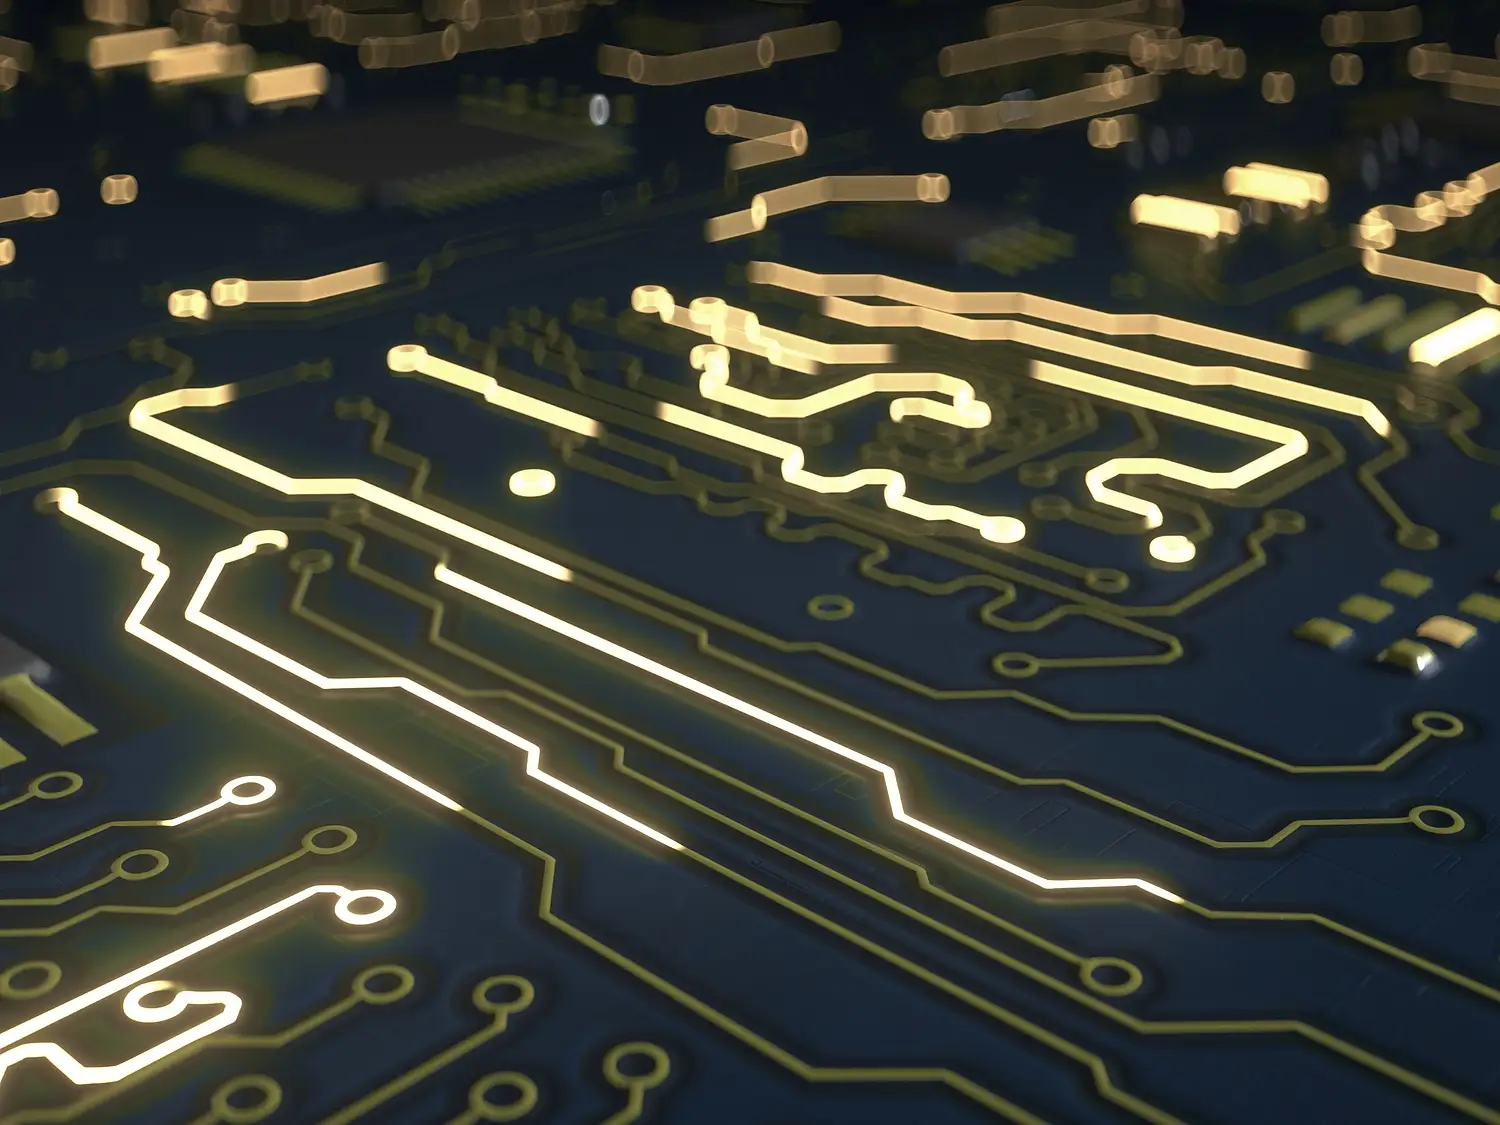 Blauw elektrisch circuit. Concept informatica of elektronica. 3D render illustratie met ondiepe scherptediepte